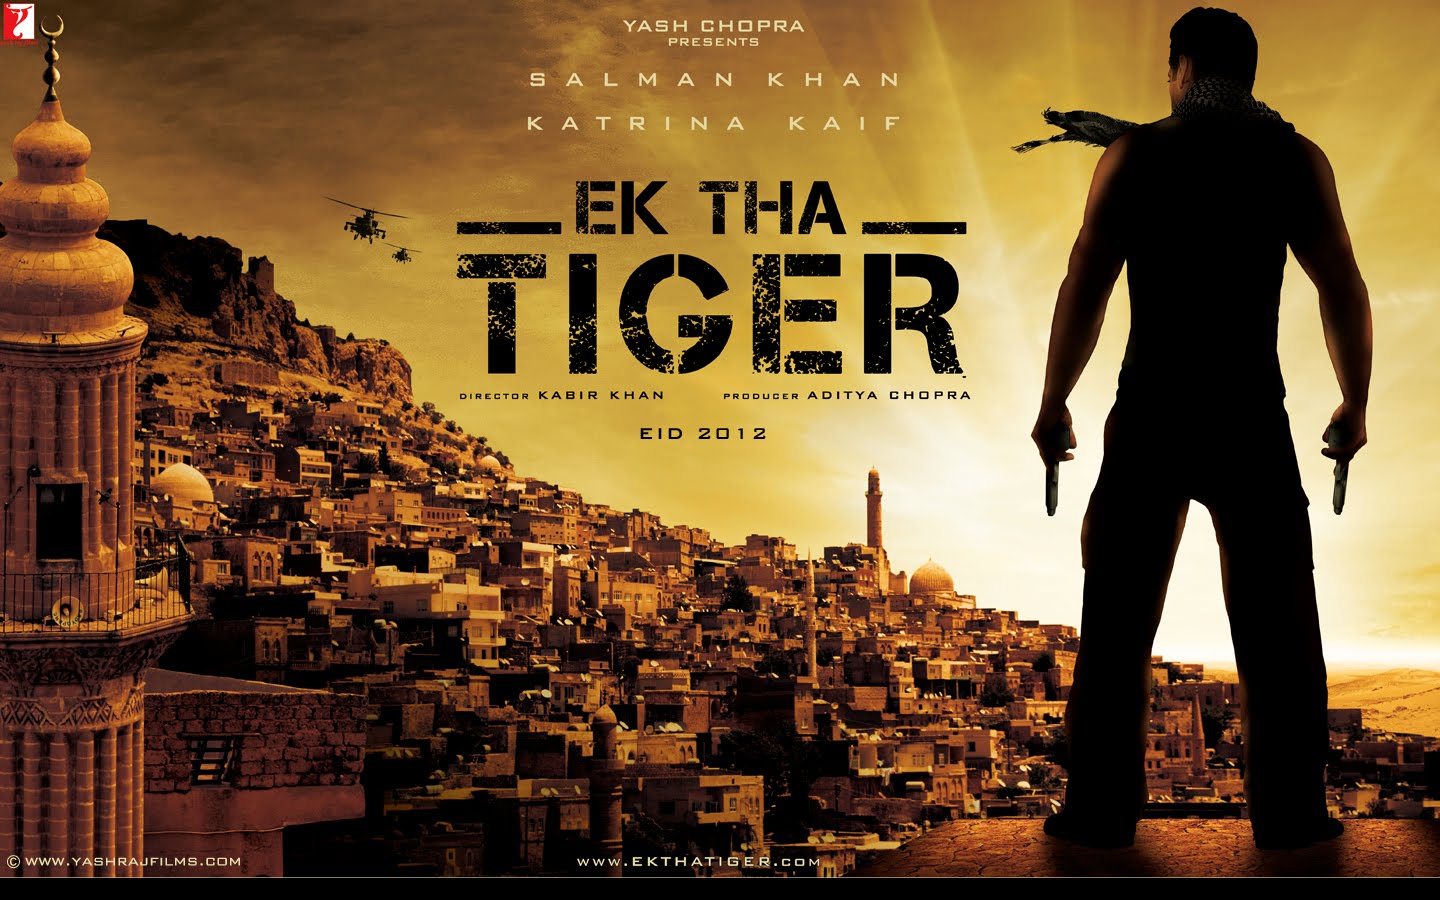 EK THA TIGER - Salman Khan